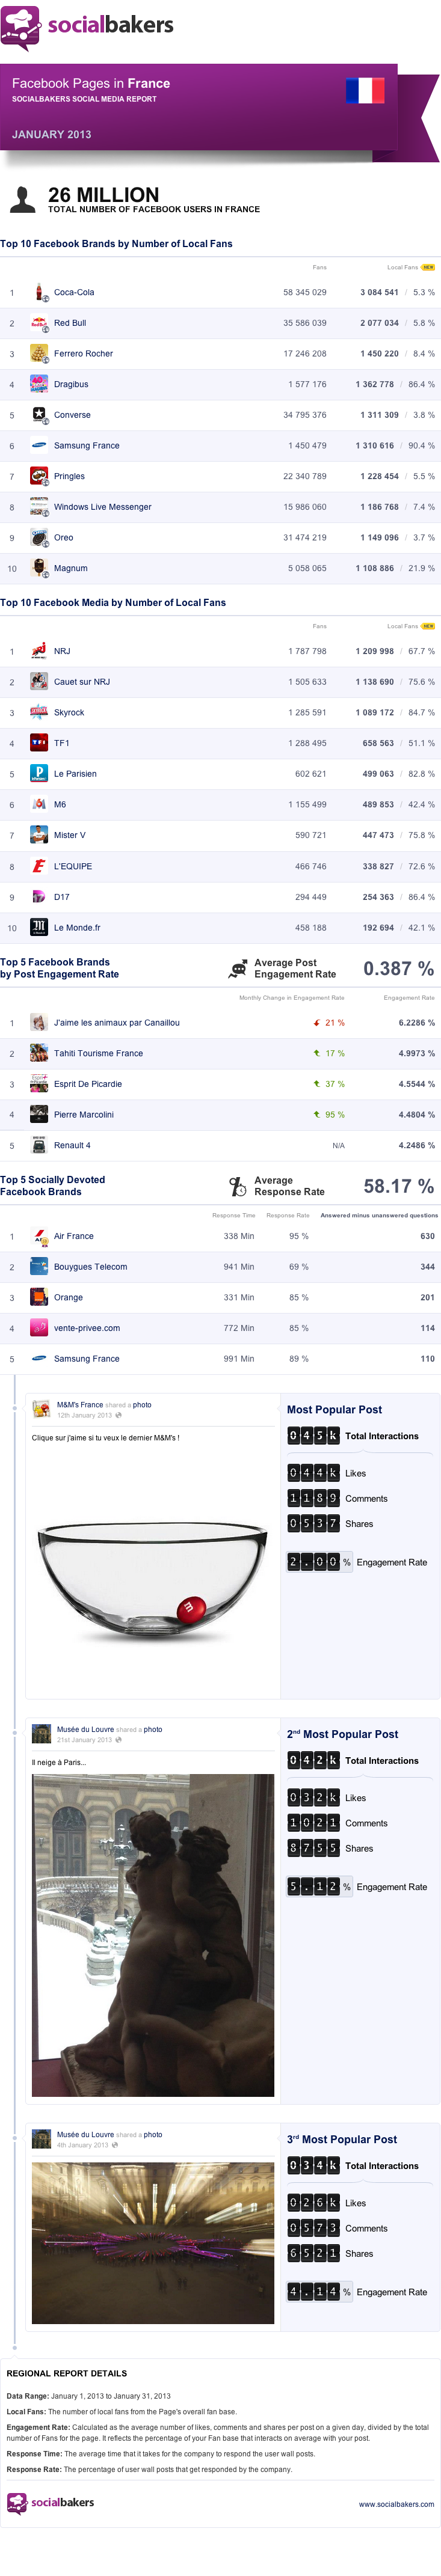 statistiques-pages-facebook-france-janvier-2013